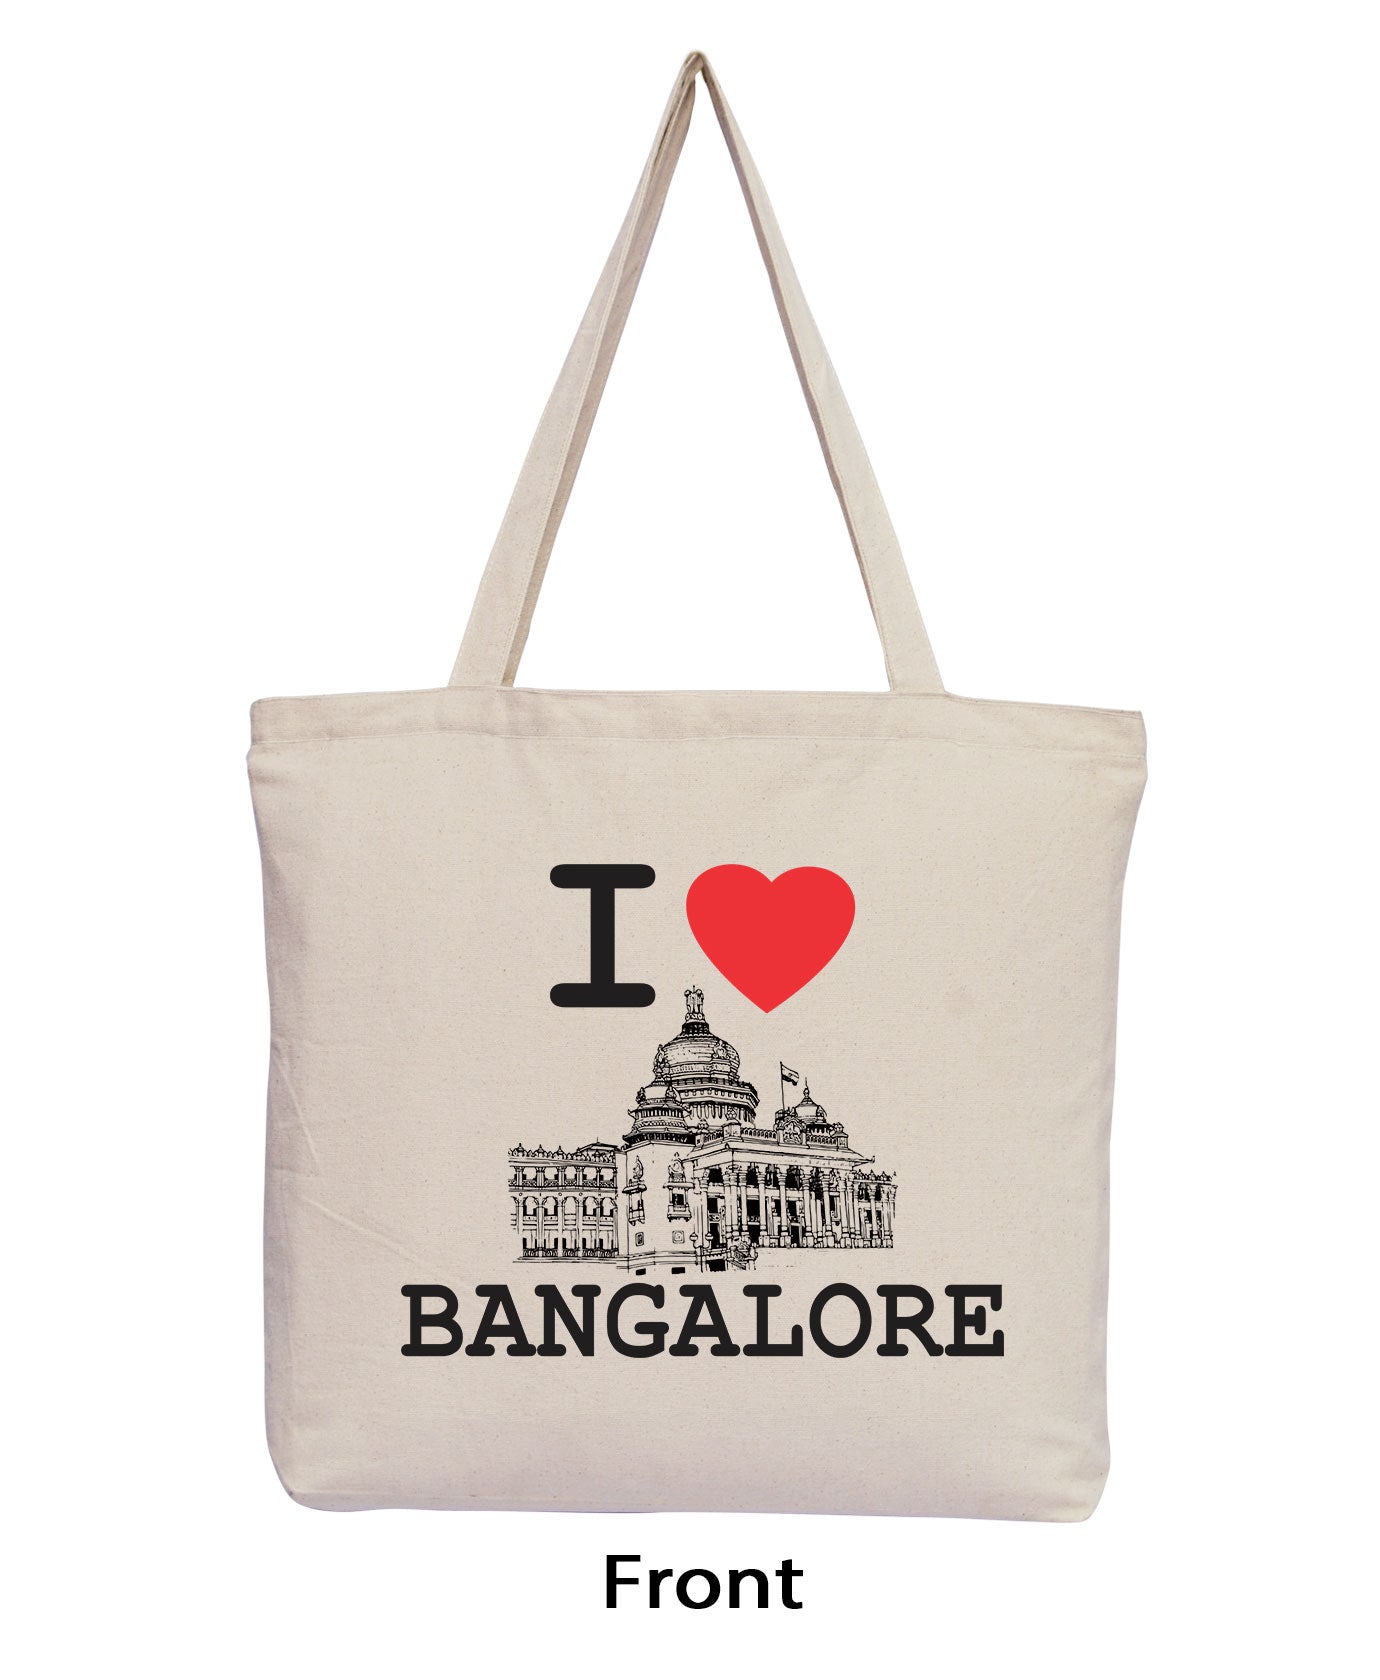 Bangalore Girl Tote Bag by Rakhi Sawant  Pixels